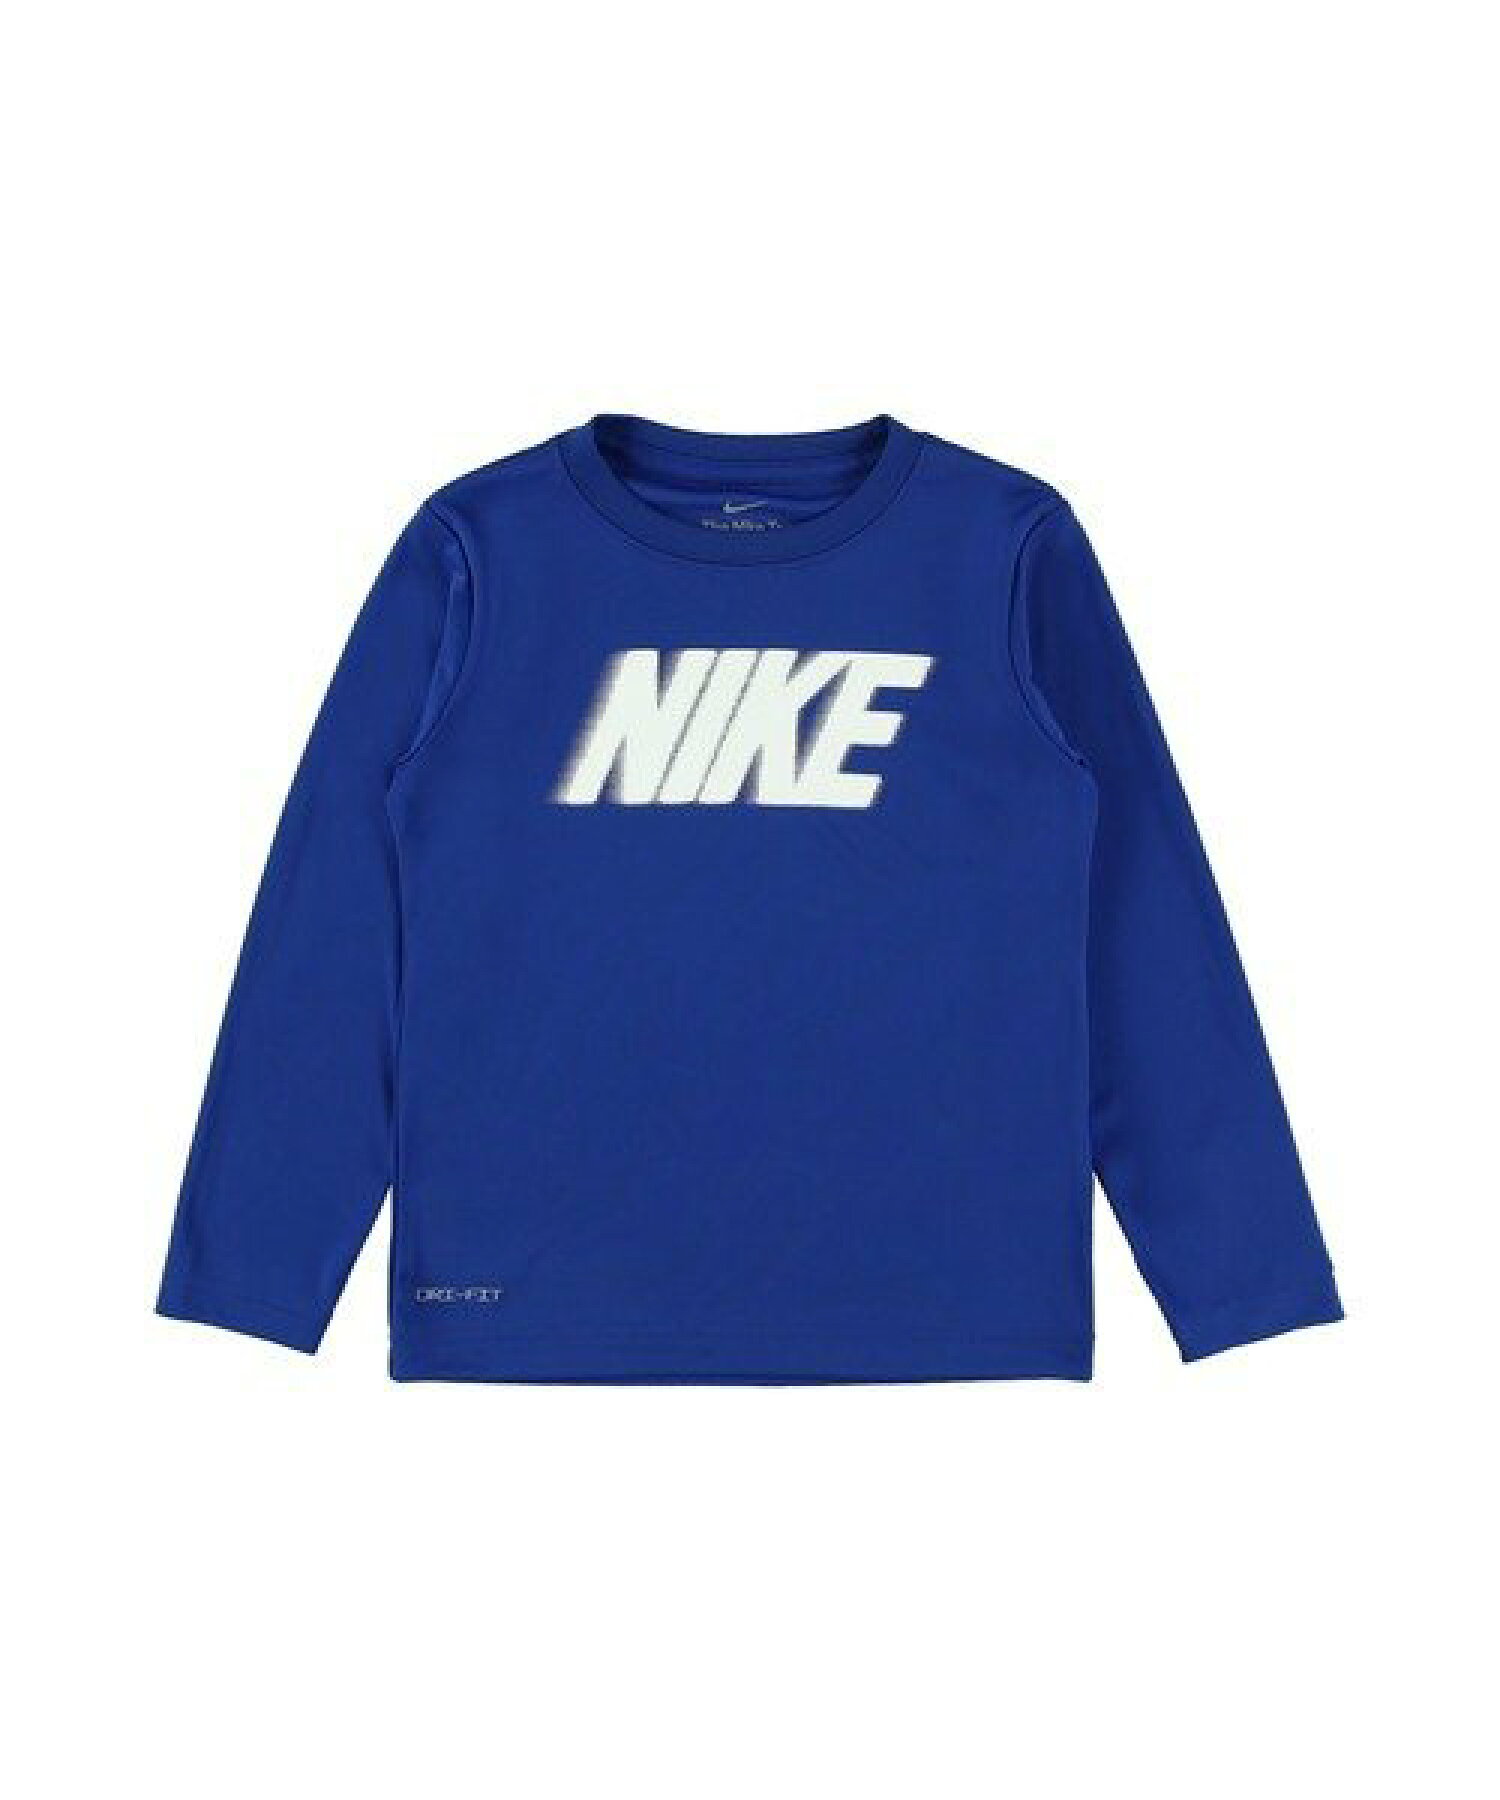 キッズ(105-120cm) Tシャツ NIKE(ナイキ) NKB ALL DAY NIKE BLOCK LS